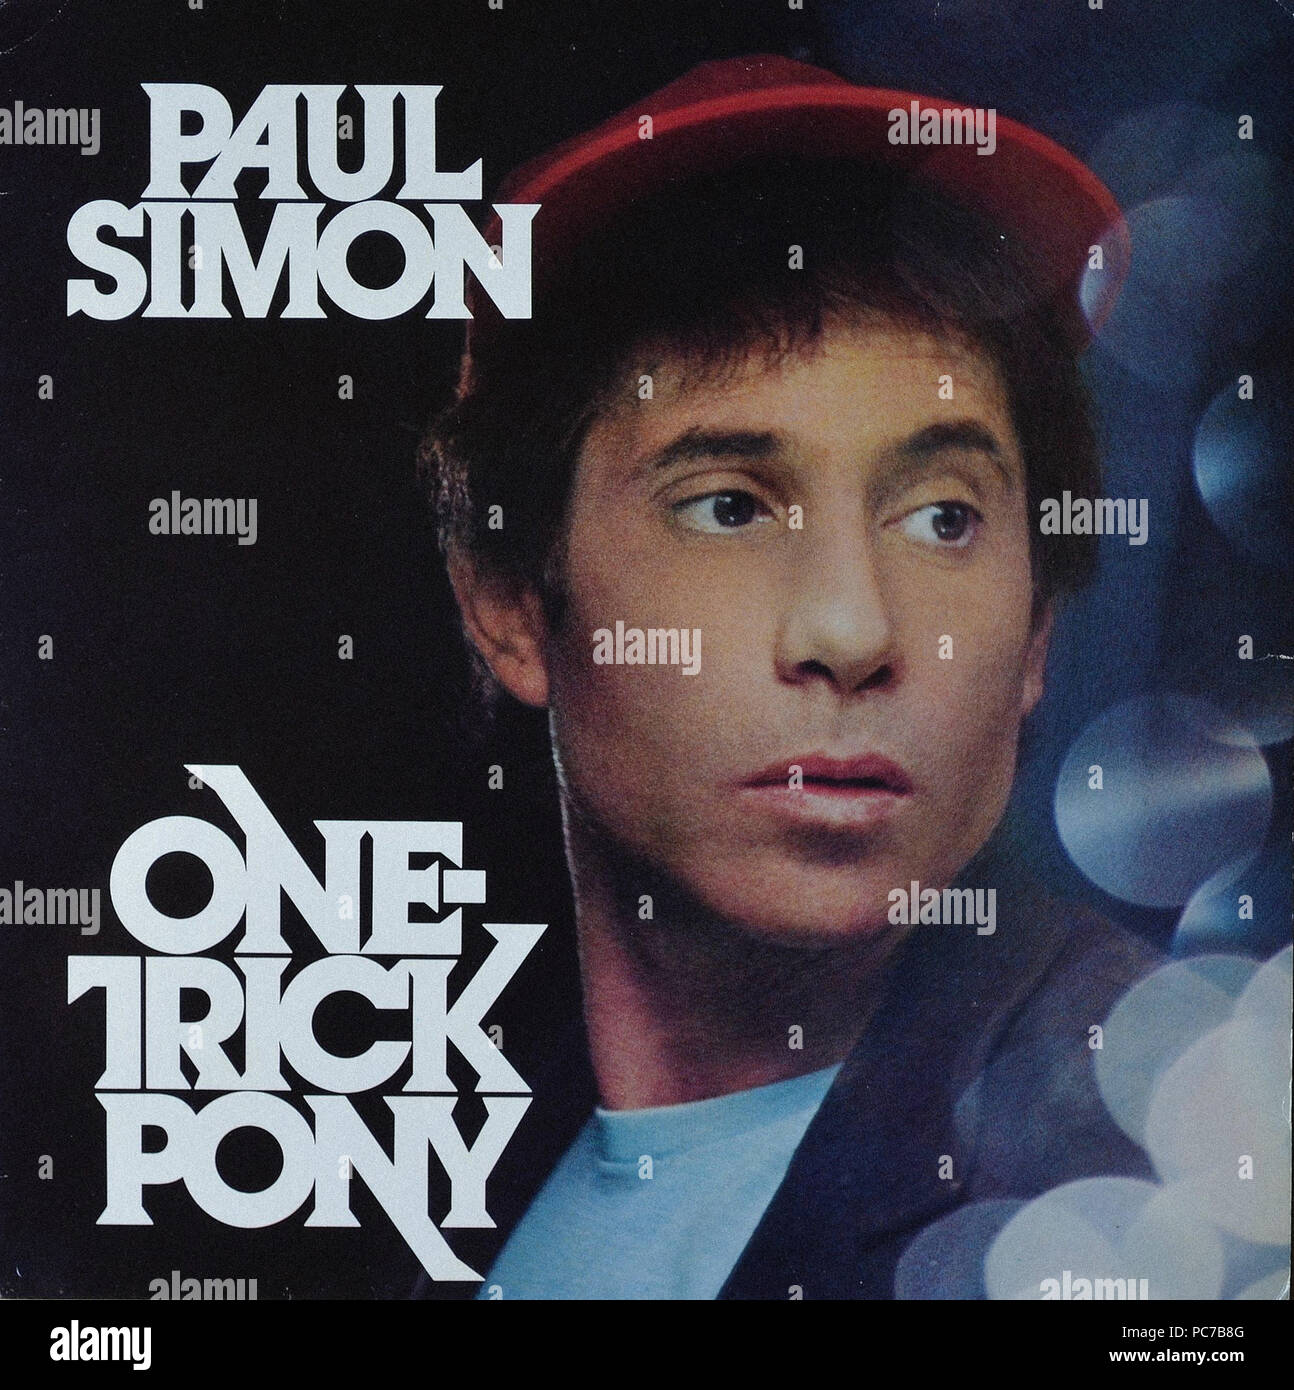 Paul Simon-One Trick Pony - Vintage Vinyl Album Cover Stockfoto ...